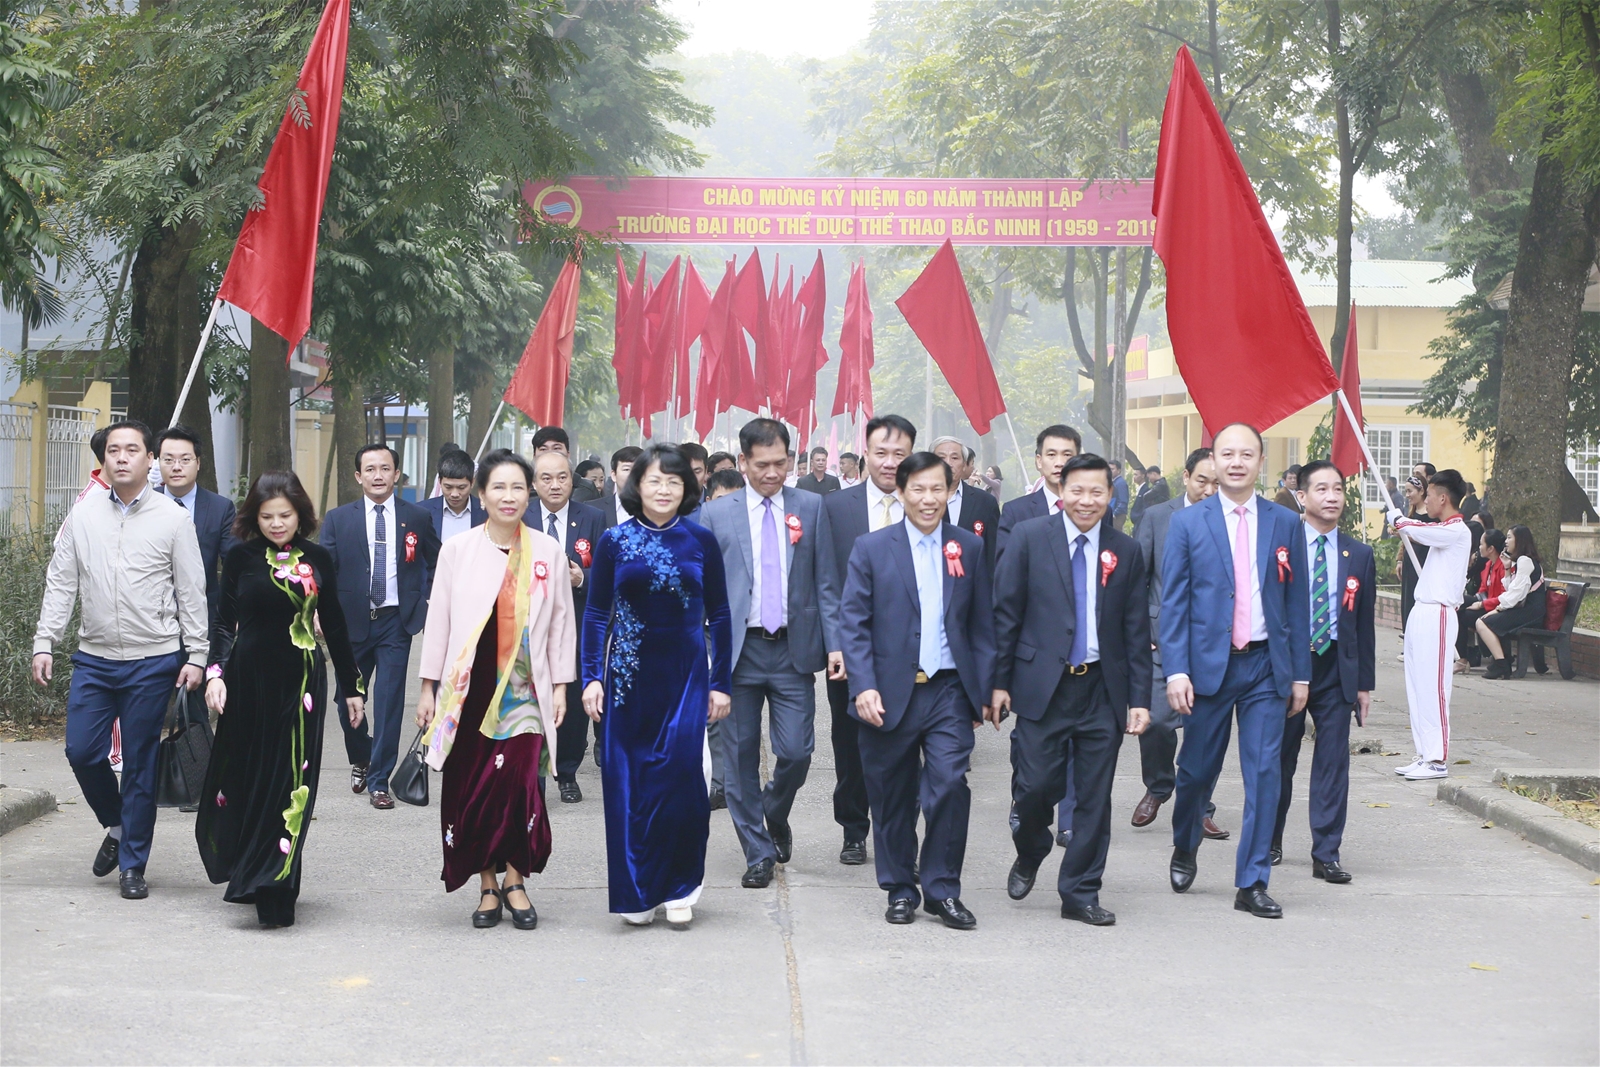 Chùm ảnh Trường Đại học Thể dục thể thao Bắc Ninh tổ chức Lễ kỷ niệm 60 năm ngày thành lập Trường